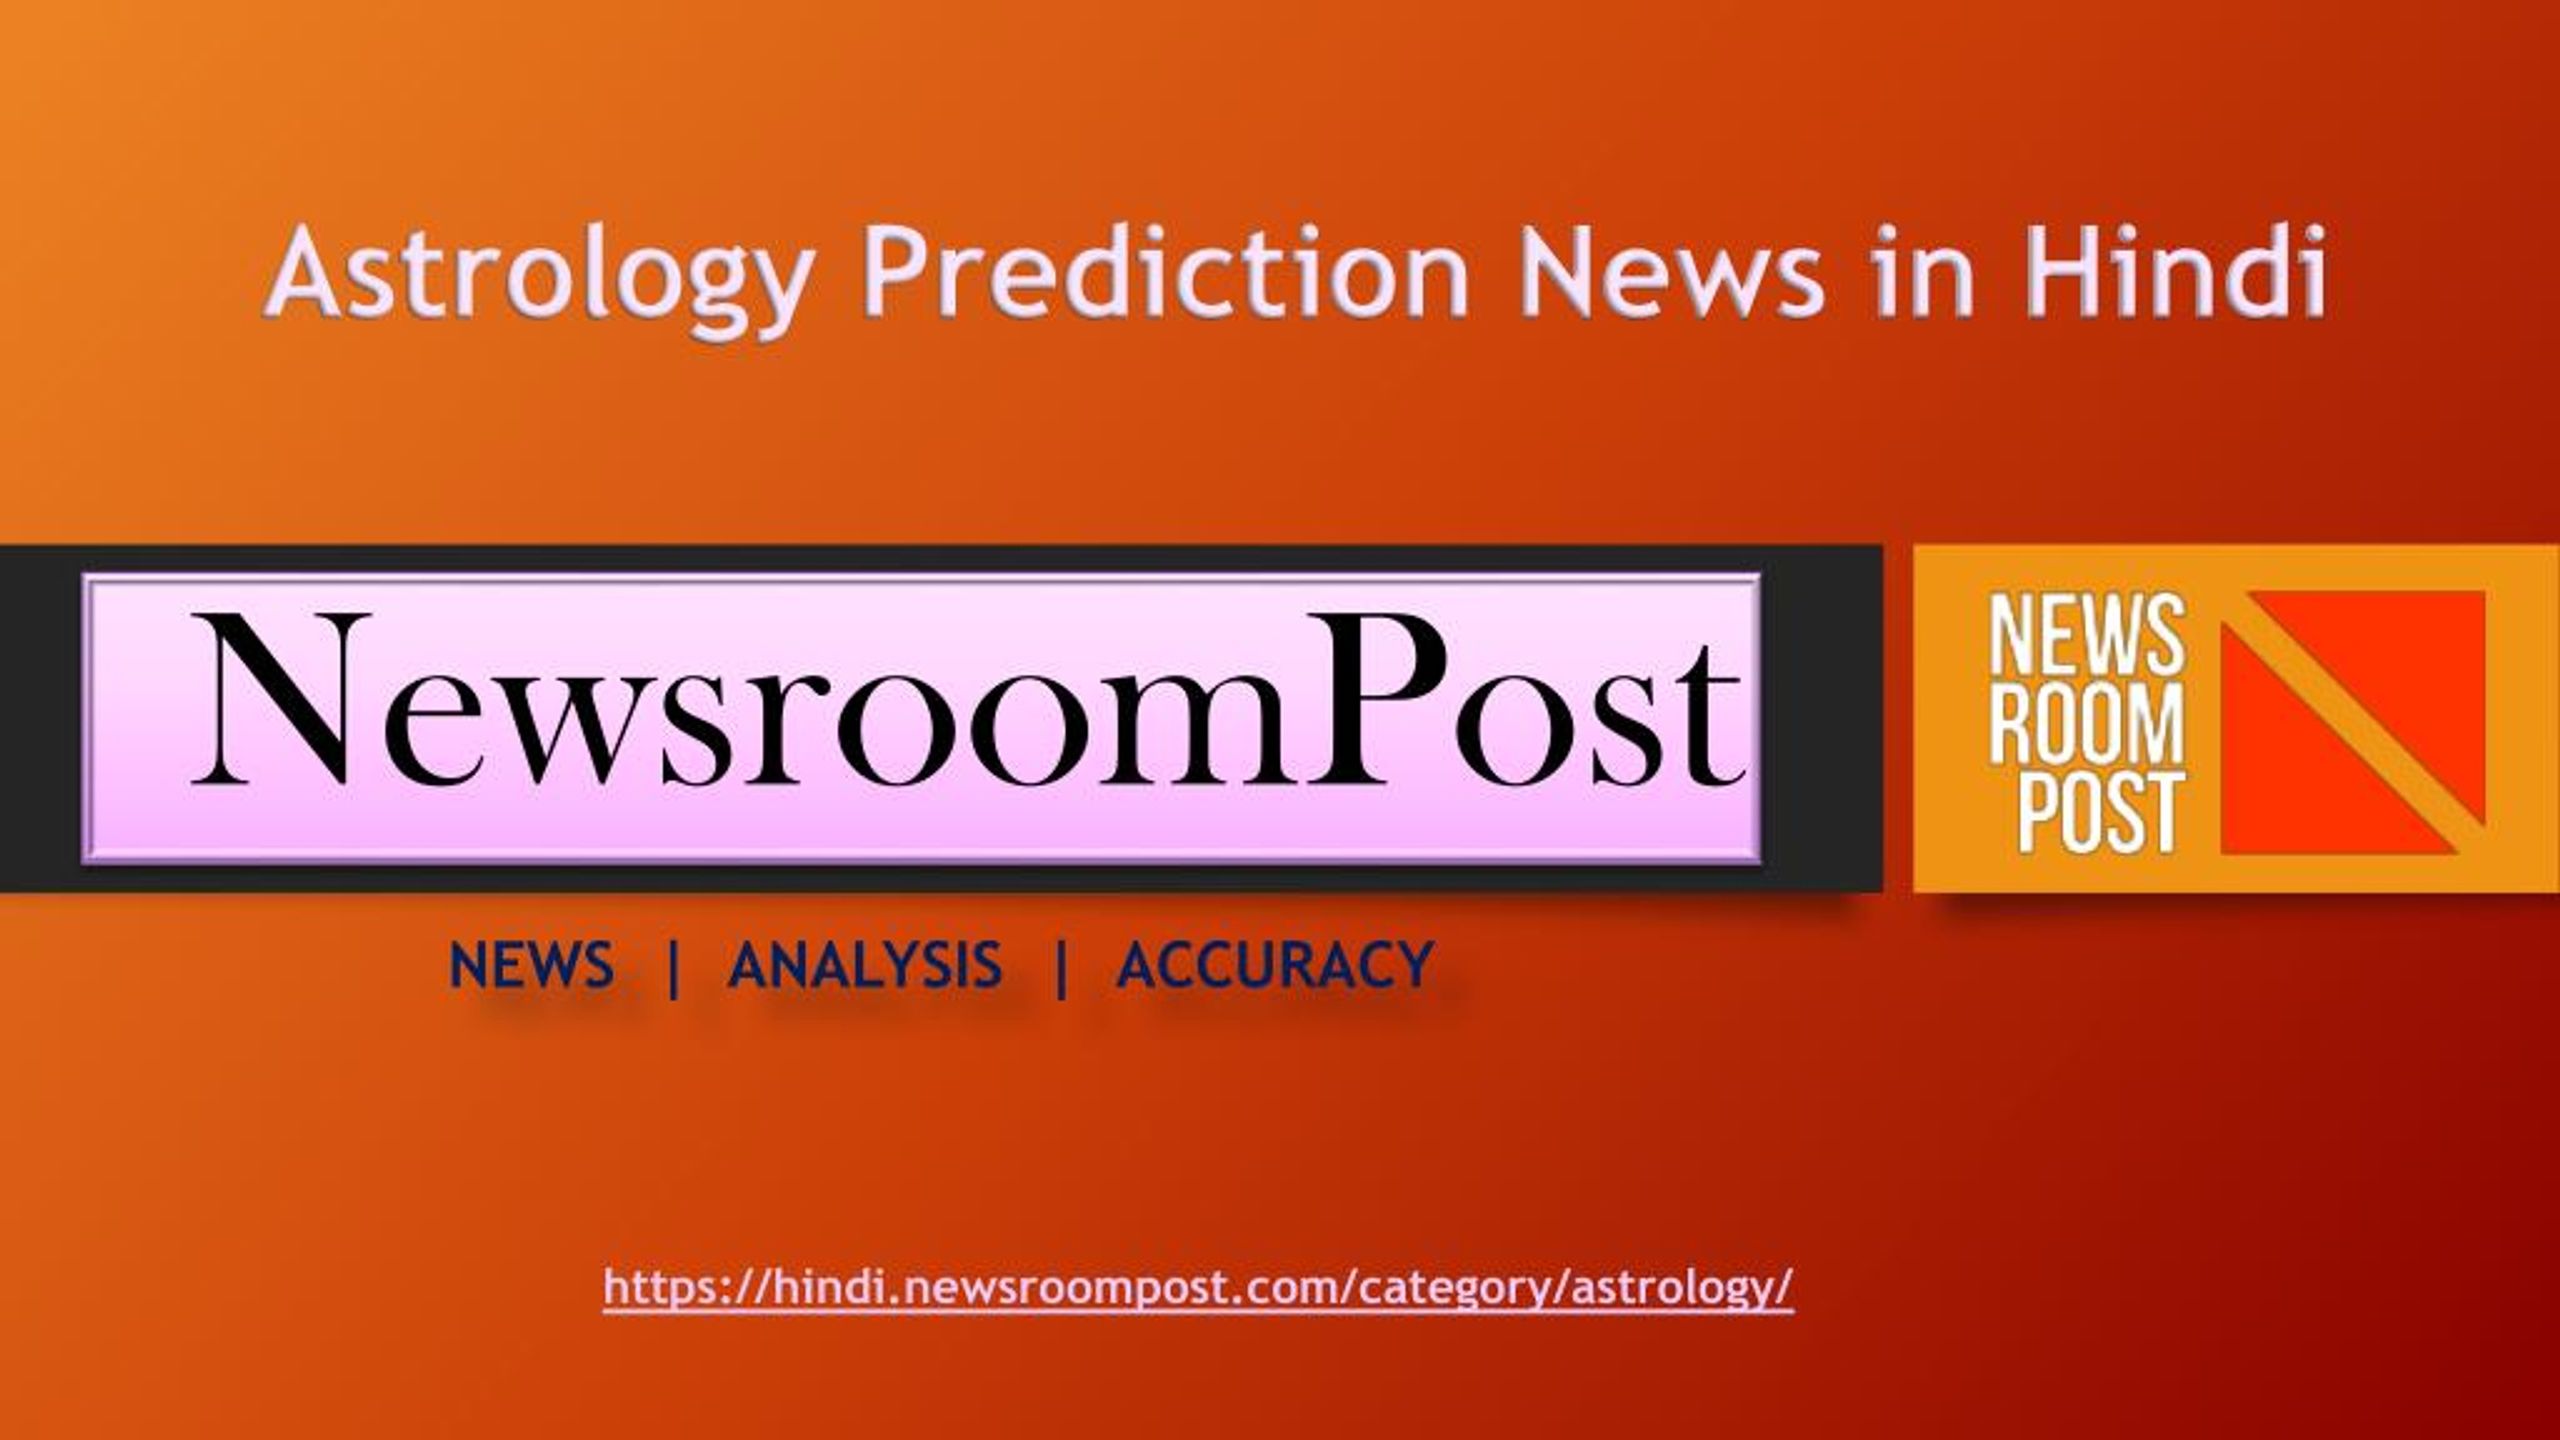 Ppt Astro Prediction News Horoscope 18 A œa A A A A A A A A A Sa A A Newsroompost Powerpoint Presentation Id